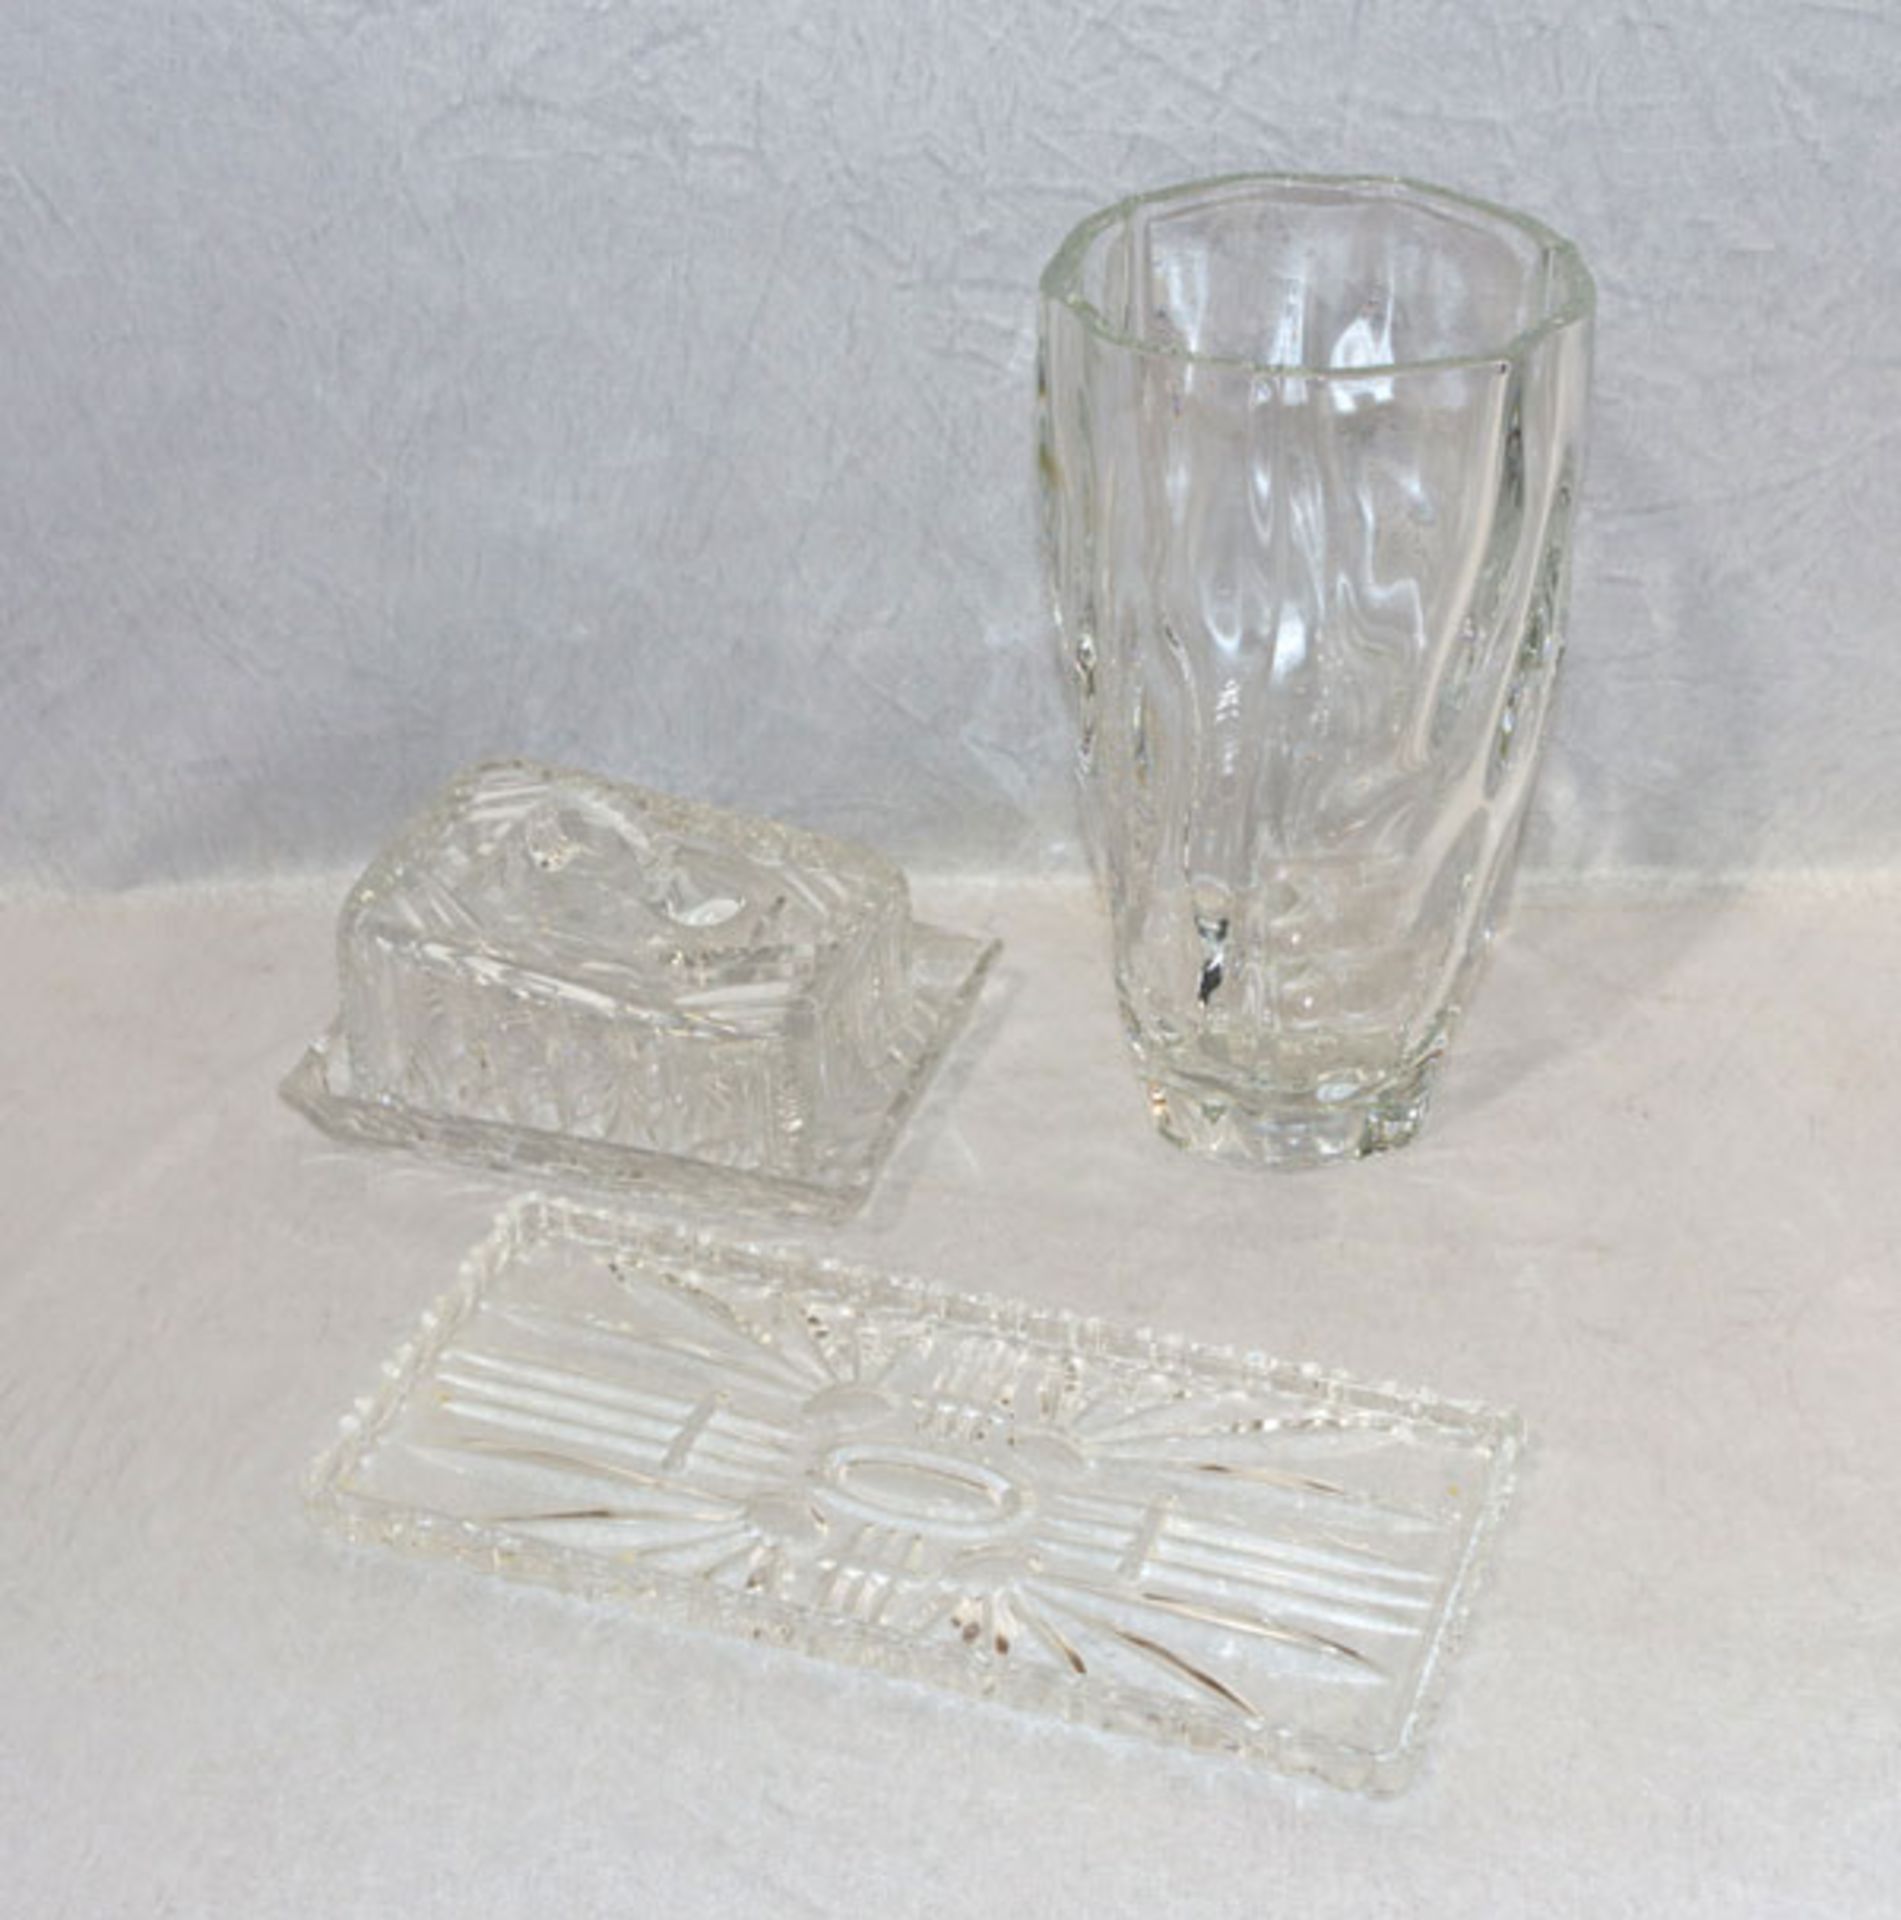 Glas-Konvolut: Nachtmann Blumenvase, H 27,5 cm, D 15 cm, Kuchenplatte, 30 cm x 14 cm, und